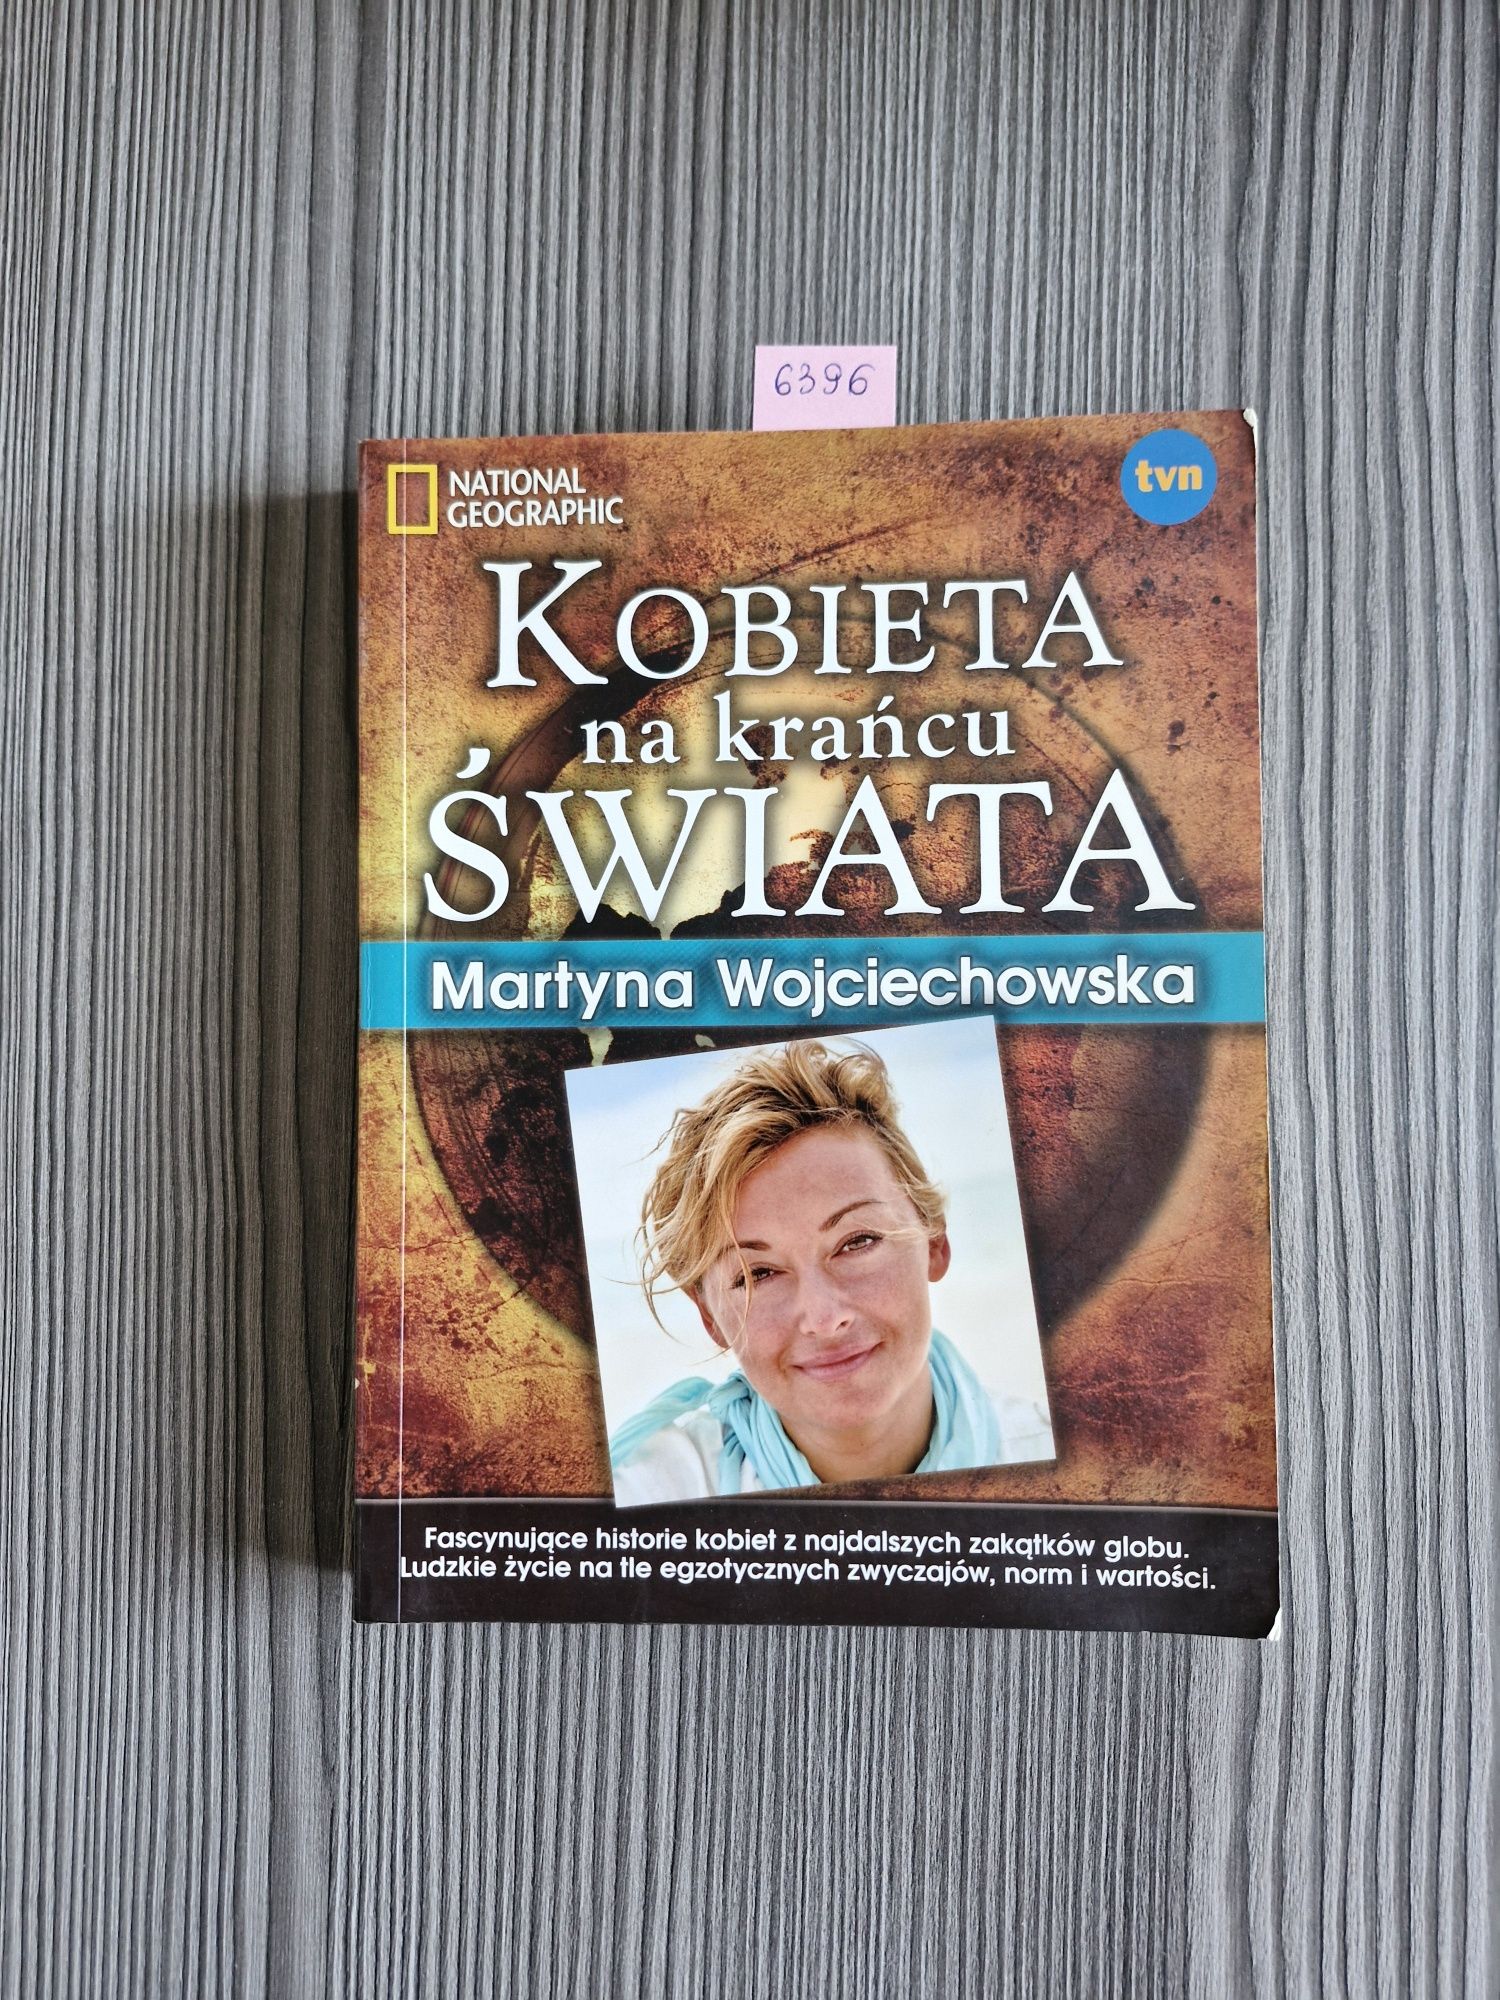 6396. "Kobieta na krańcu świata" Martyna Wojciechowska